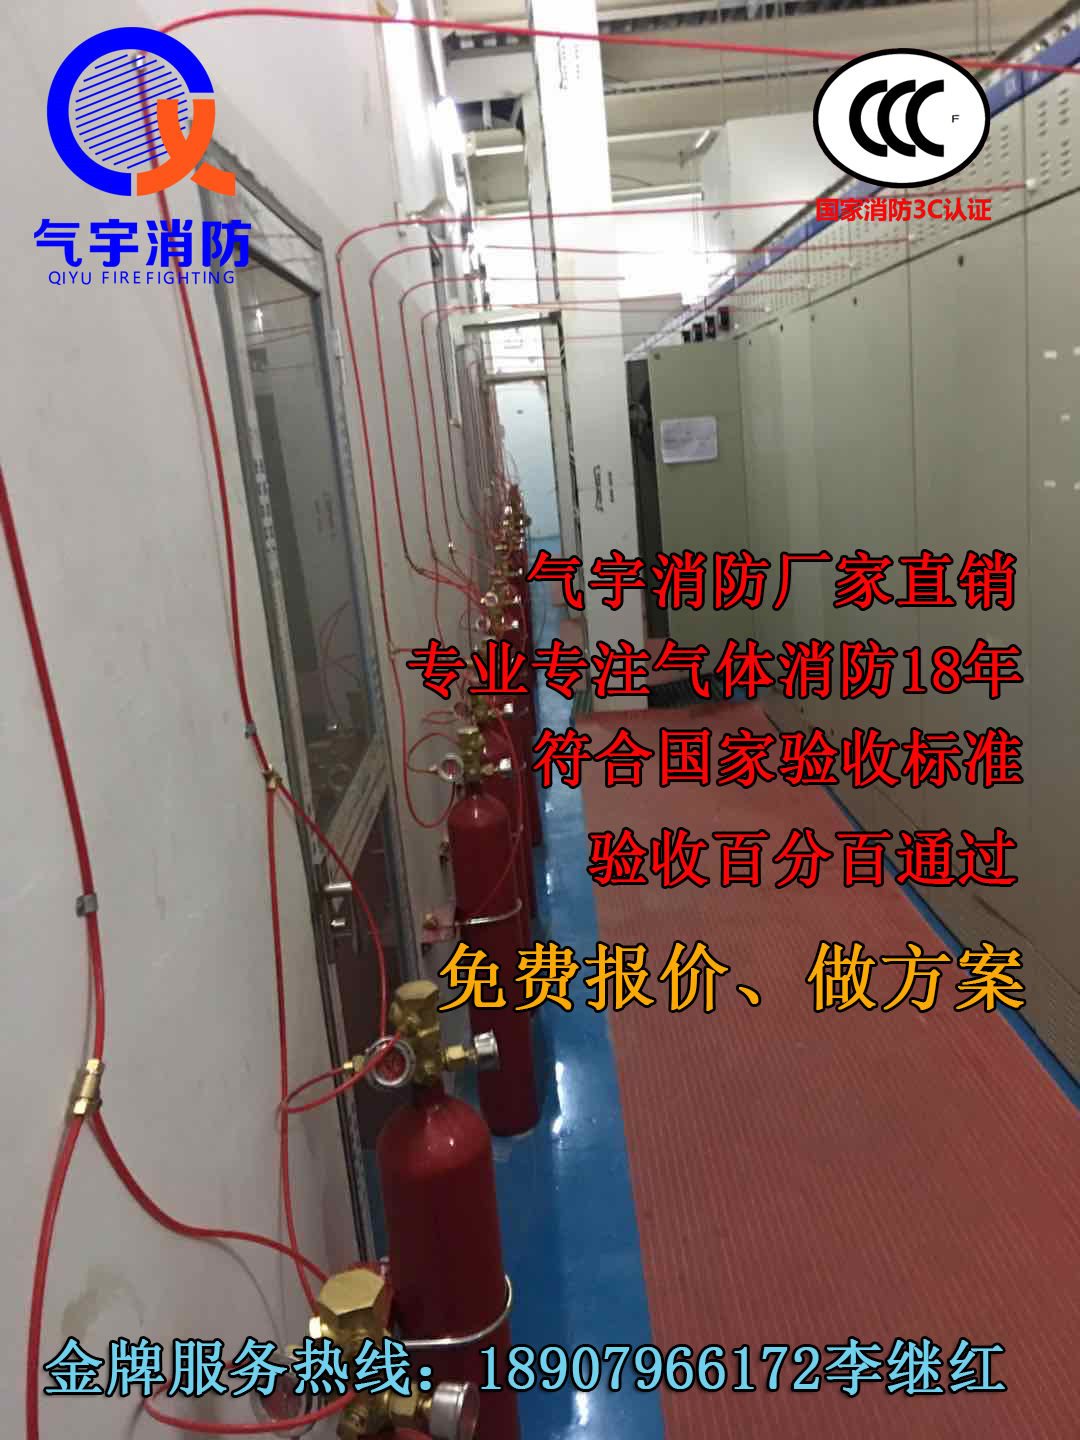 广东生产热销产品 七氟丙烷火探管感温自动灭火装置 广州气宇有检验报告